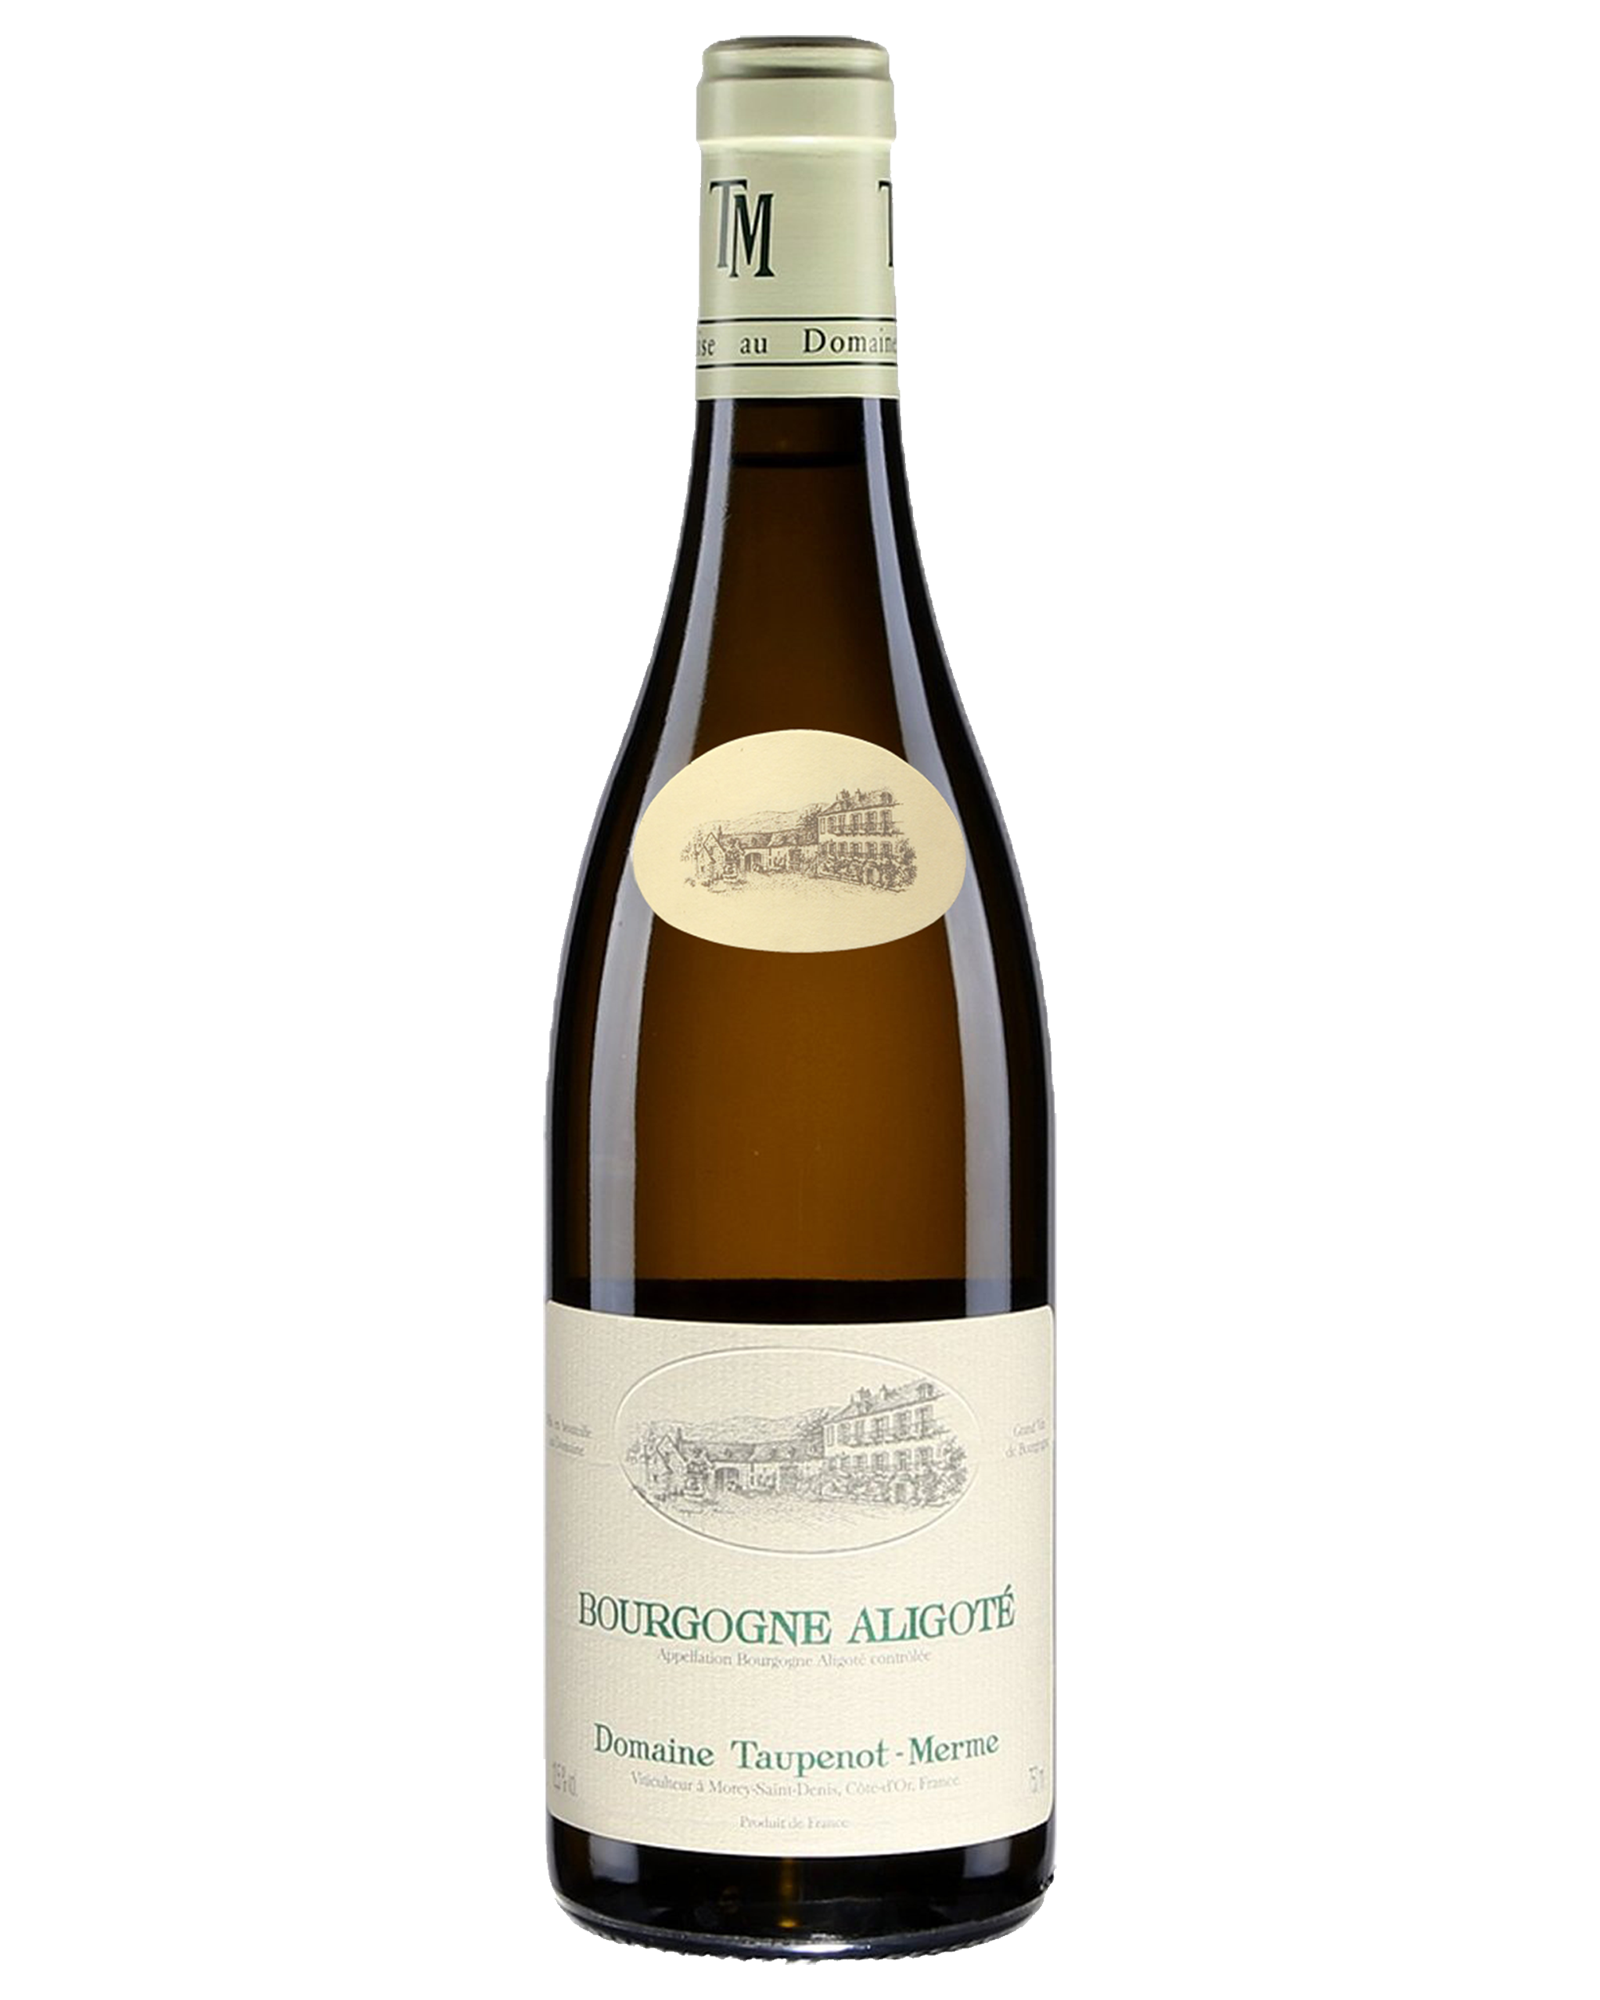 Taupenot-Merme Bourgogne Aligote